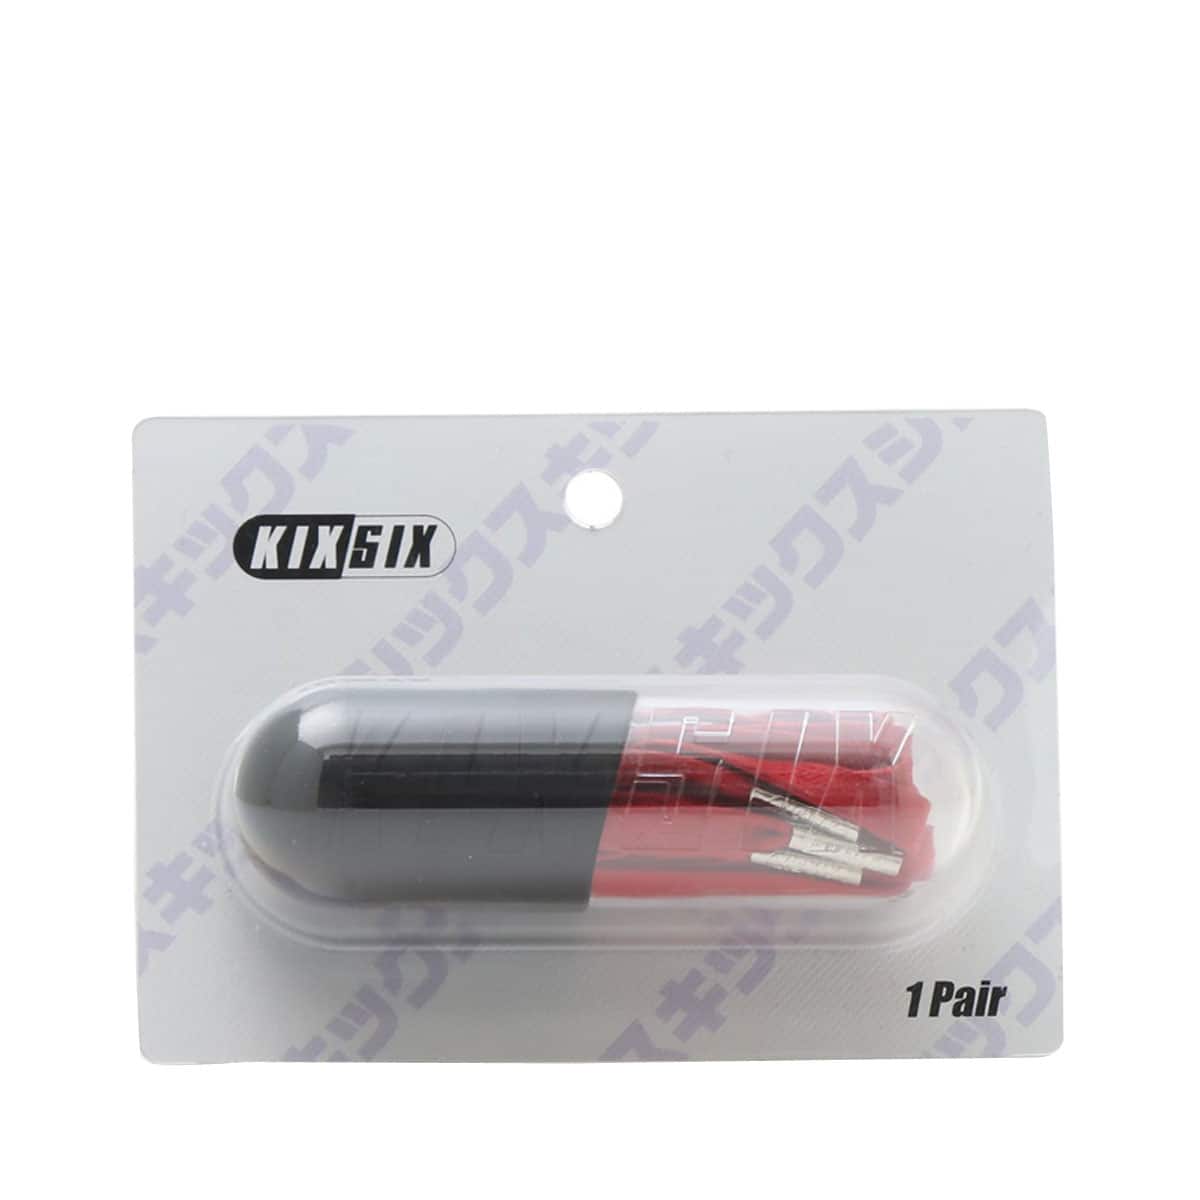 Kixsix darkpurple waxed shoelace capsule